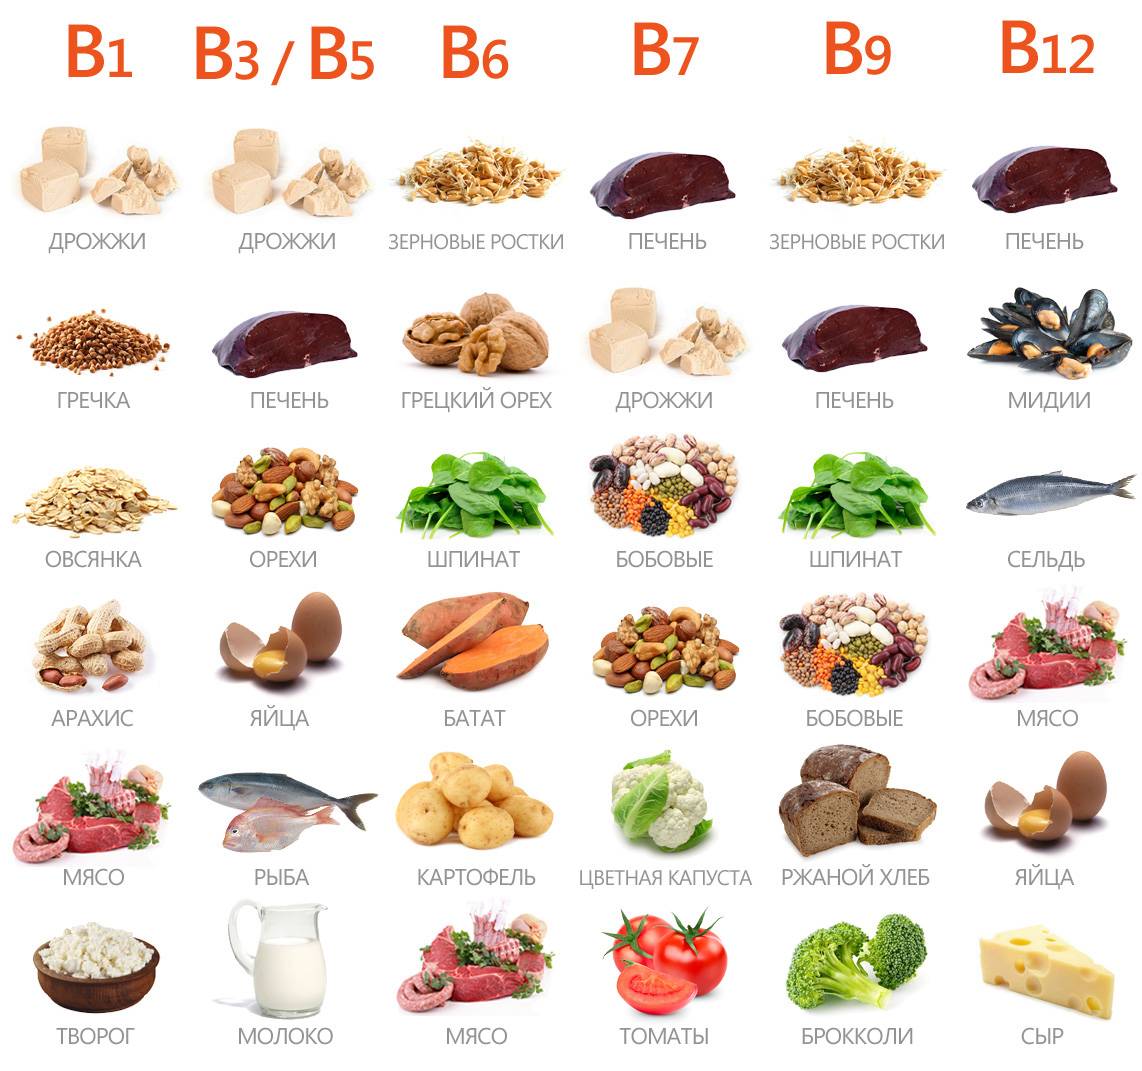 Витамин в12: в каких продуктах питания содержится, таблица и список